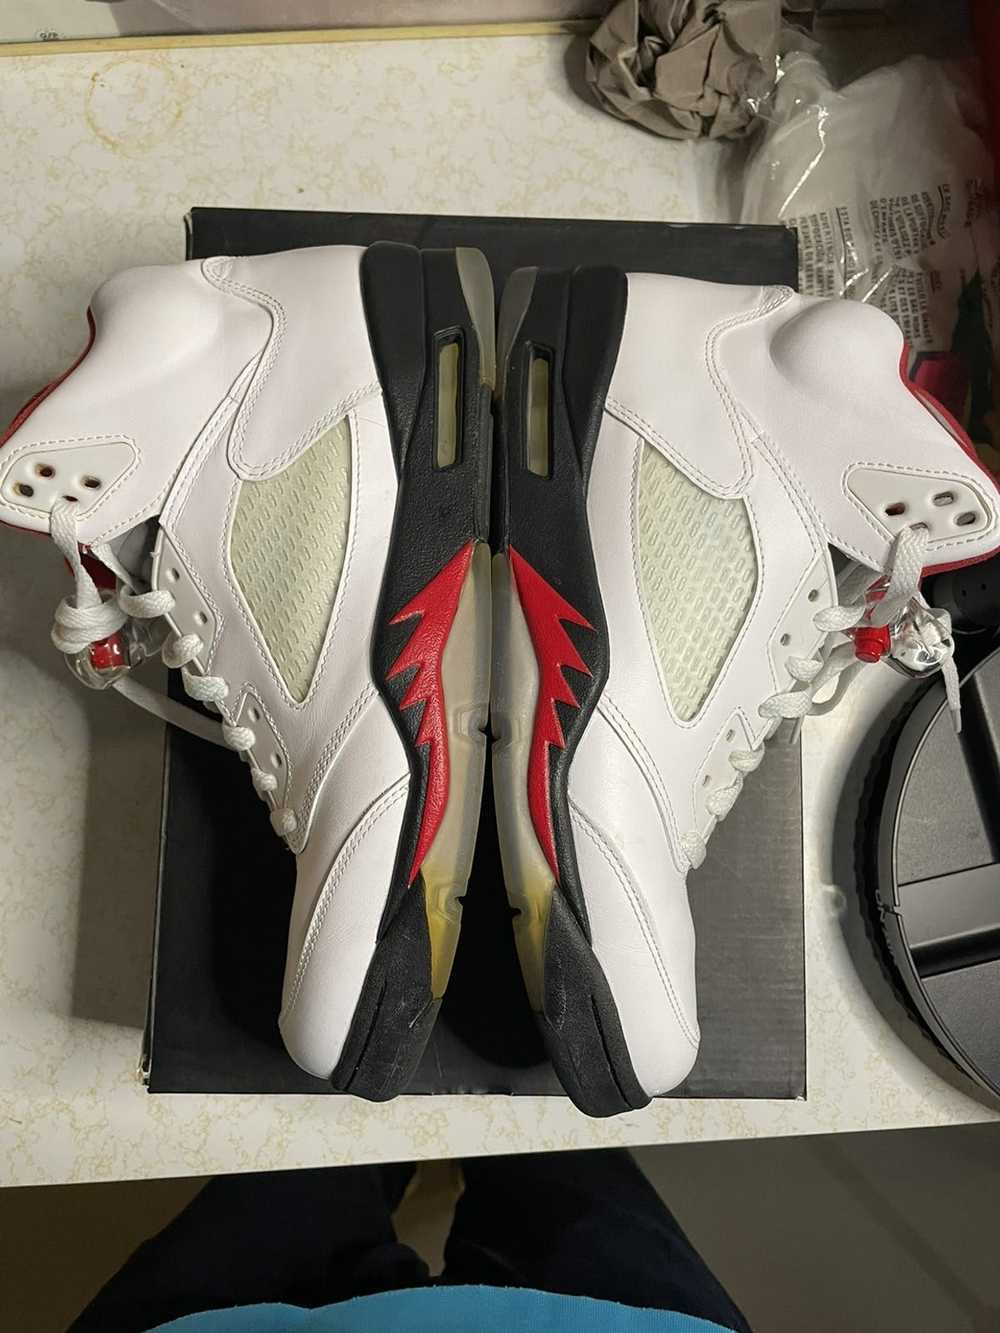 Jordan Brand Jordan Retro 5 “Fire Red” - image 3